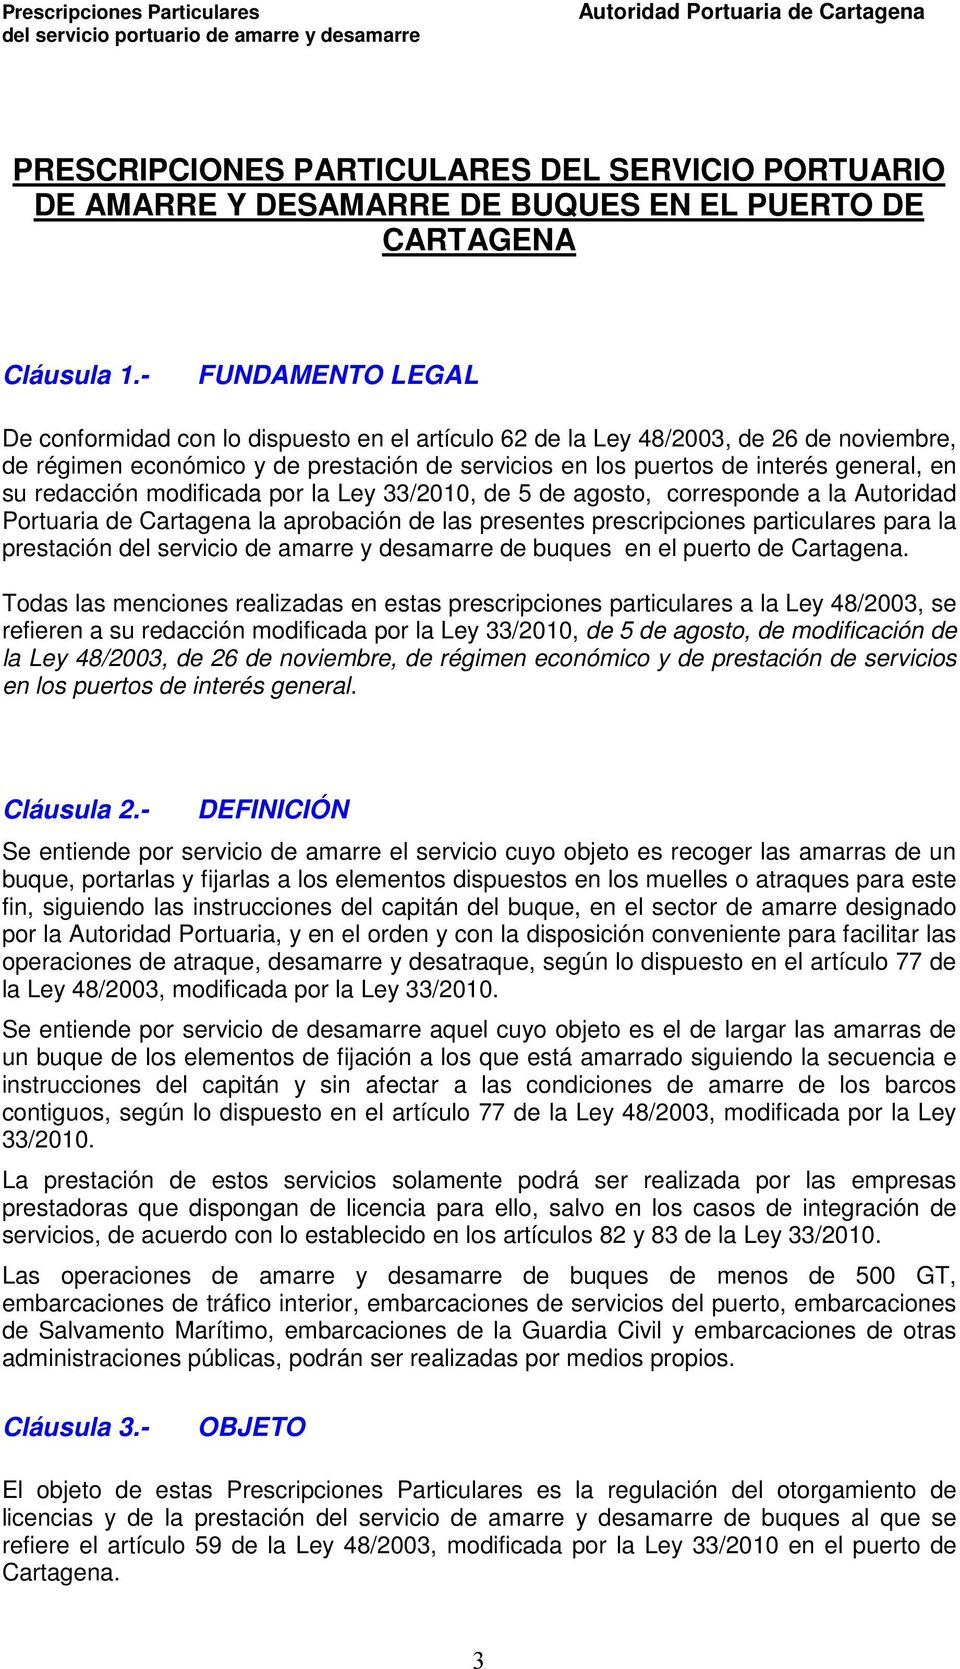 redacción modificada por la Ley 33/2010, de 5 de agosto, corresponde a la Autoridad Portuaria de Cartagena la aprobación de las presentes prescripciones particulares para la prestación del servicio